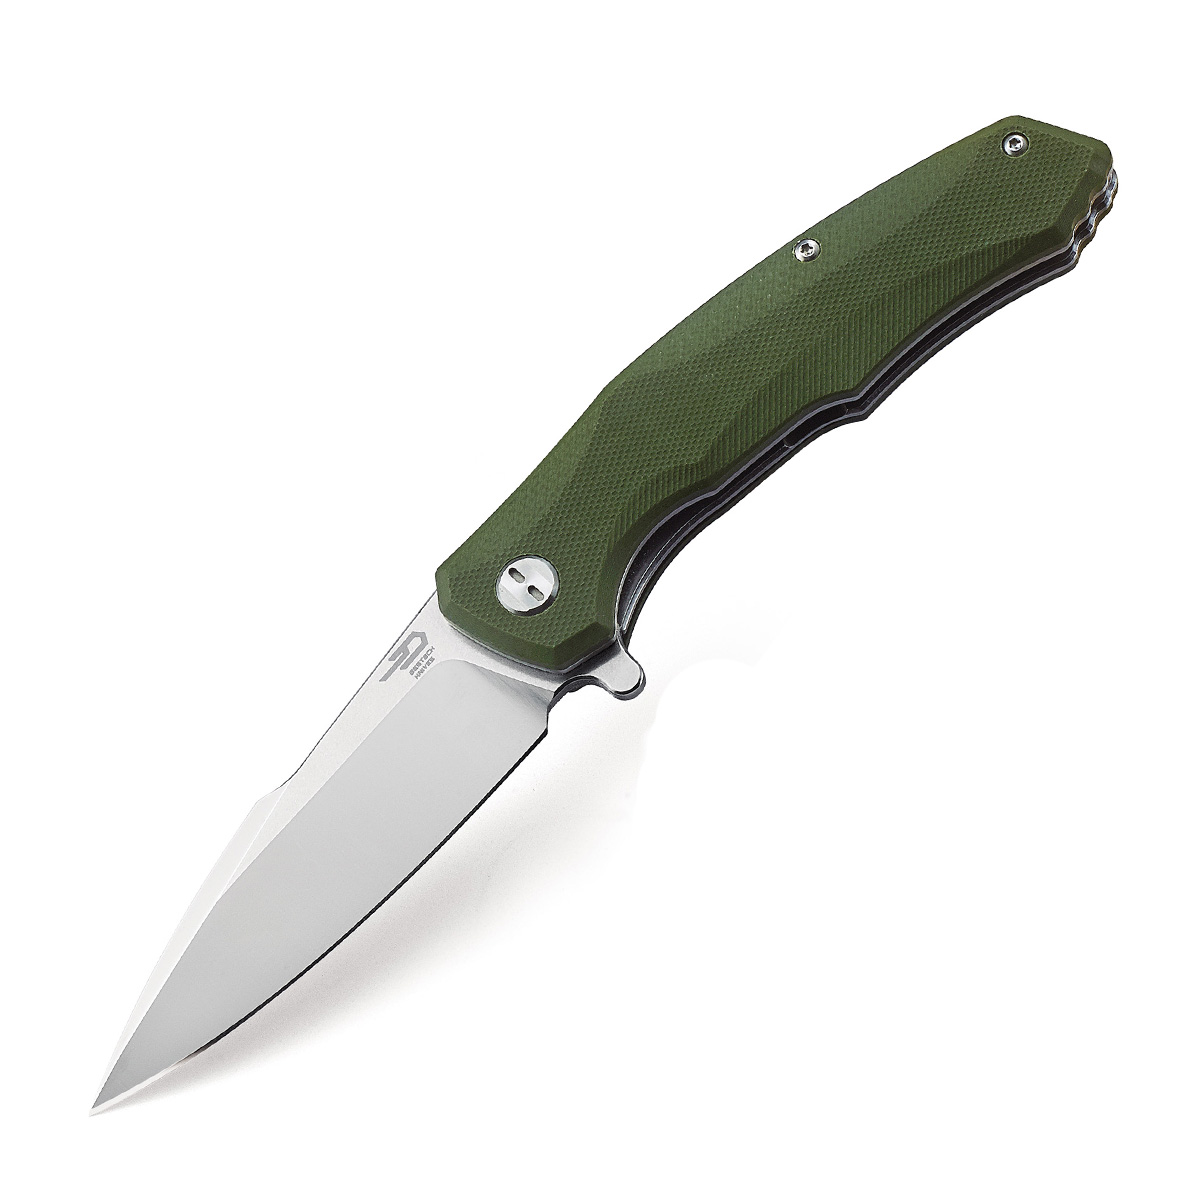 Складной нож Bestech Warwolf, D2 складной нож bestech lion d2 зеленый